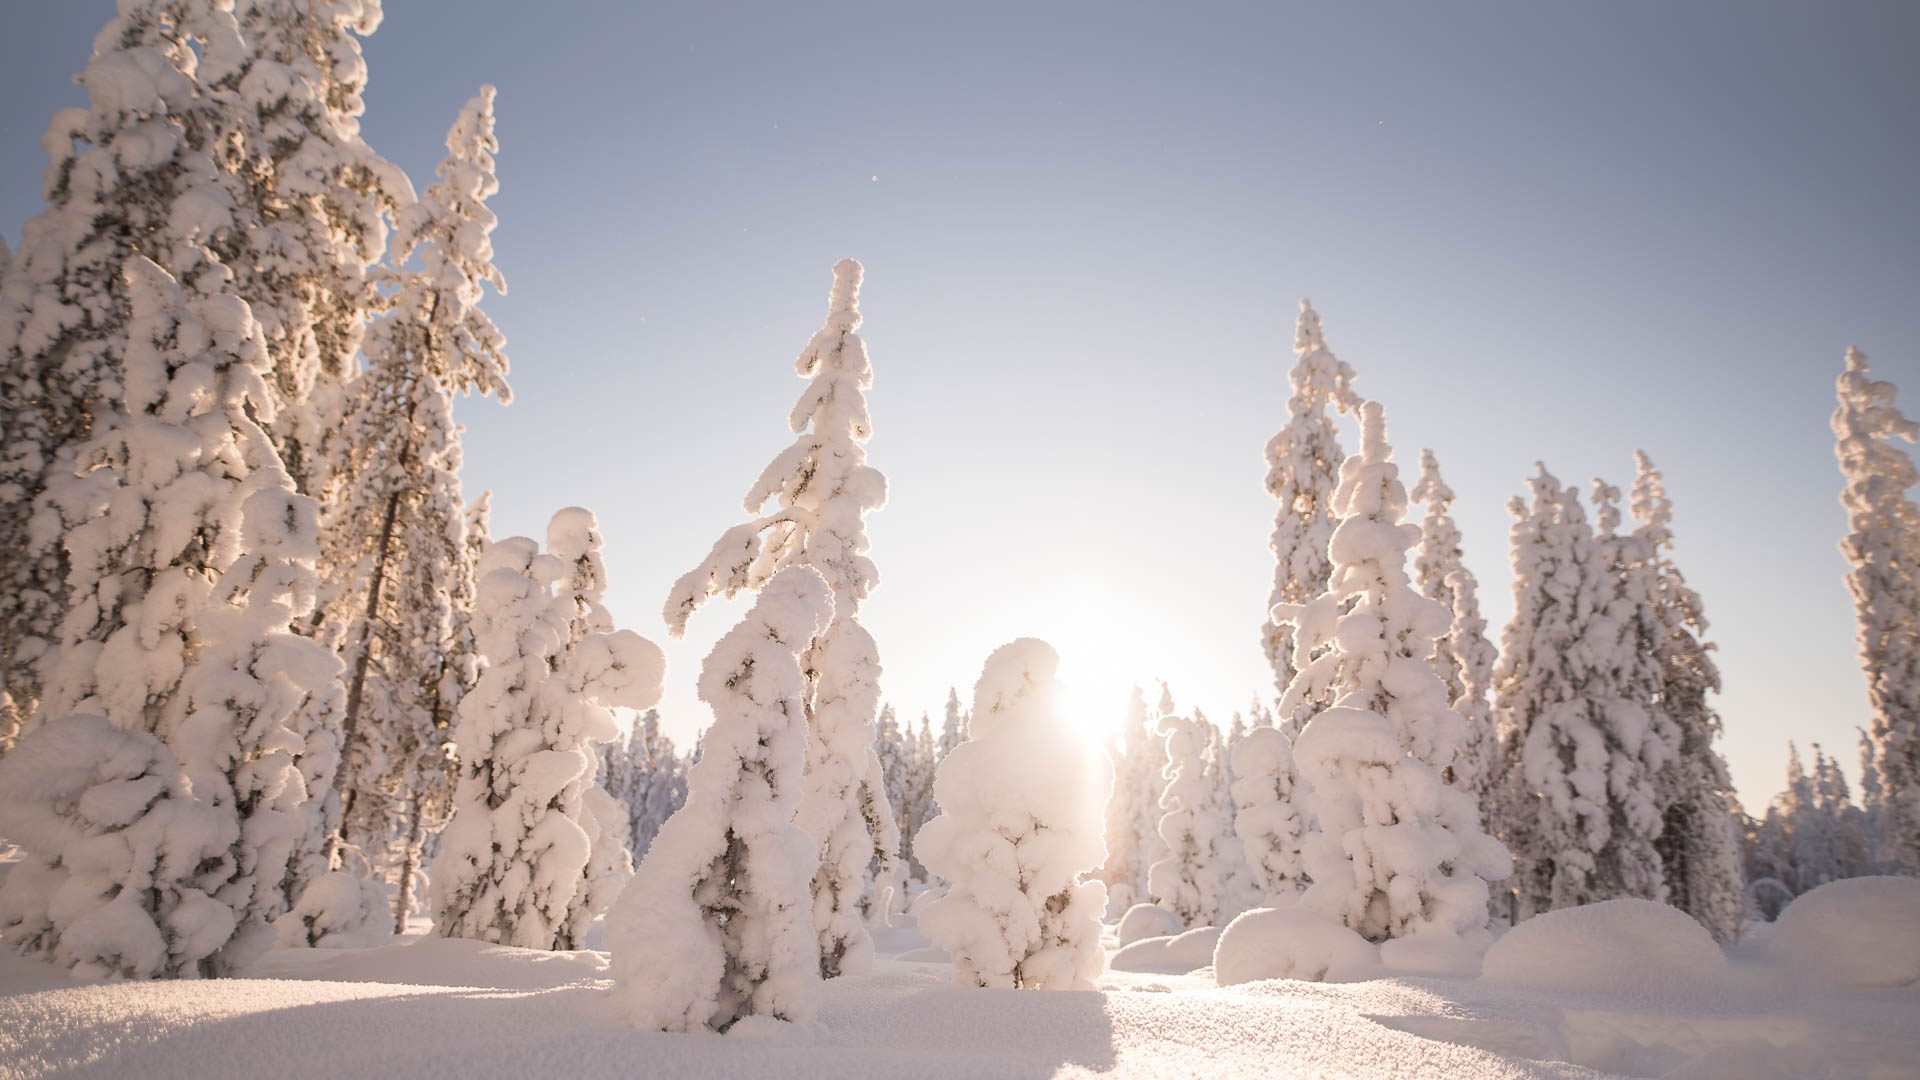 Winter forest, Snowy trees, Villi Pohjola / Wild Nordic Finland @wildnordicfinland